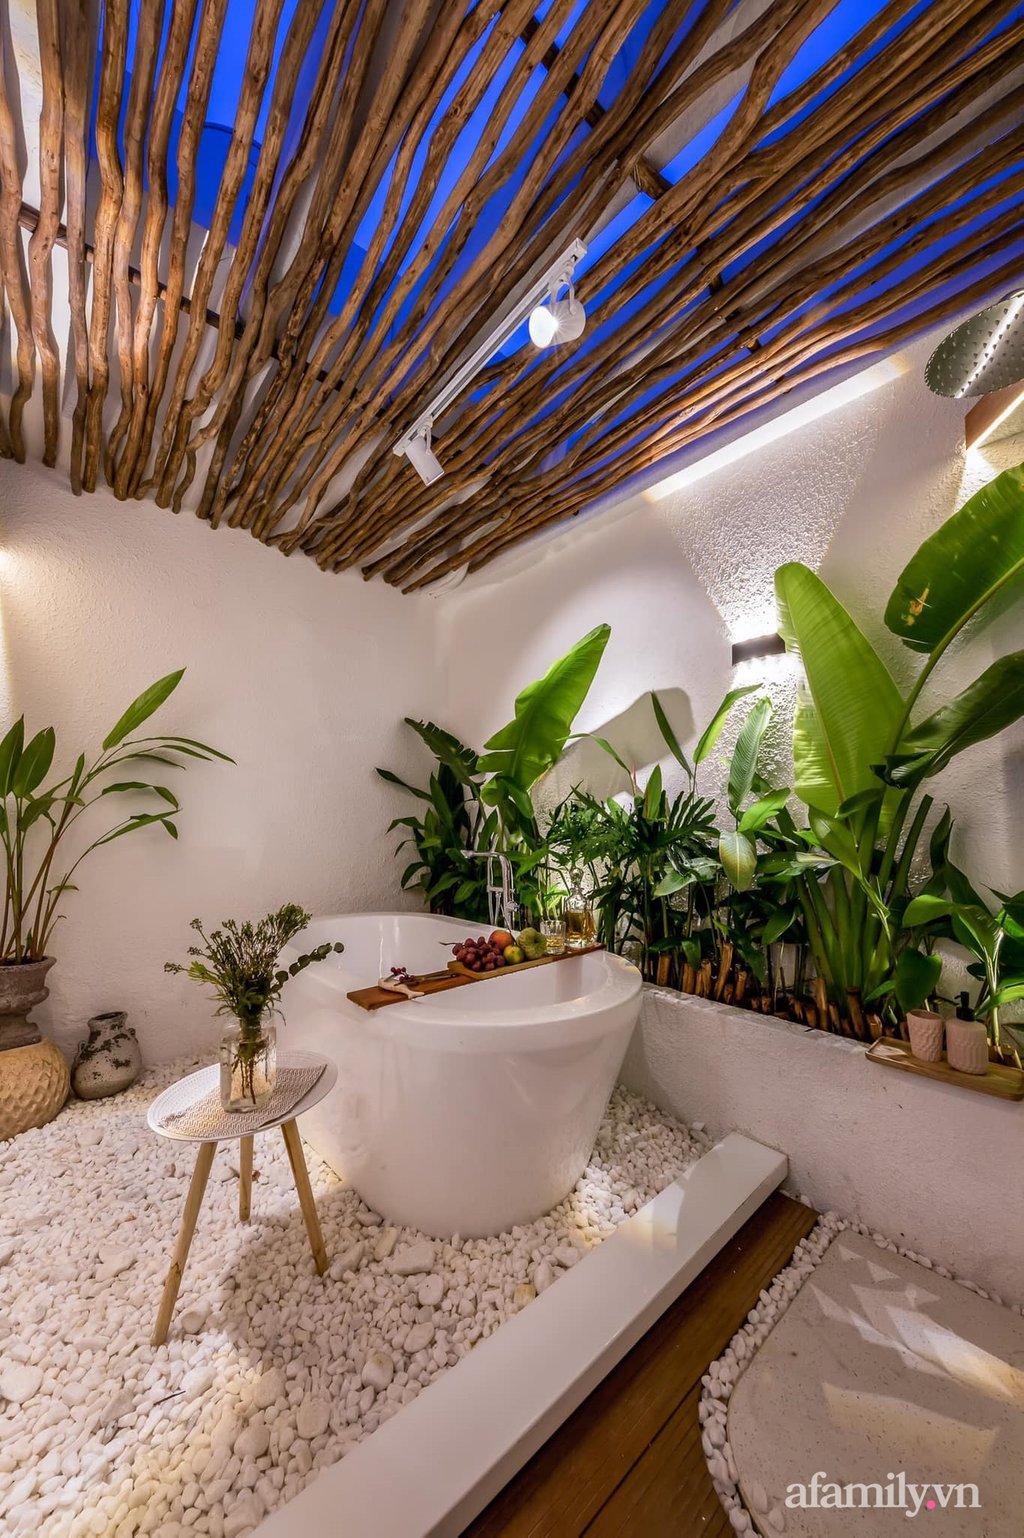 Sắc màu tươi tắn của những chất liệu gần gũi với thiên nhiên giúp phòng tắm đẹp như resort giữa lòng thành phố ầm uất bậc nhất Việt Nam.